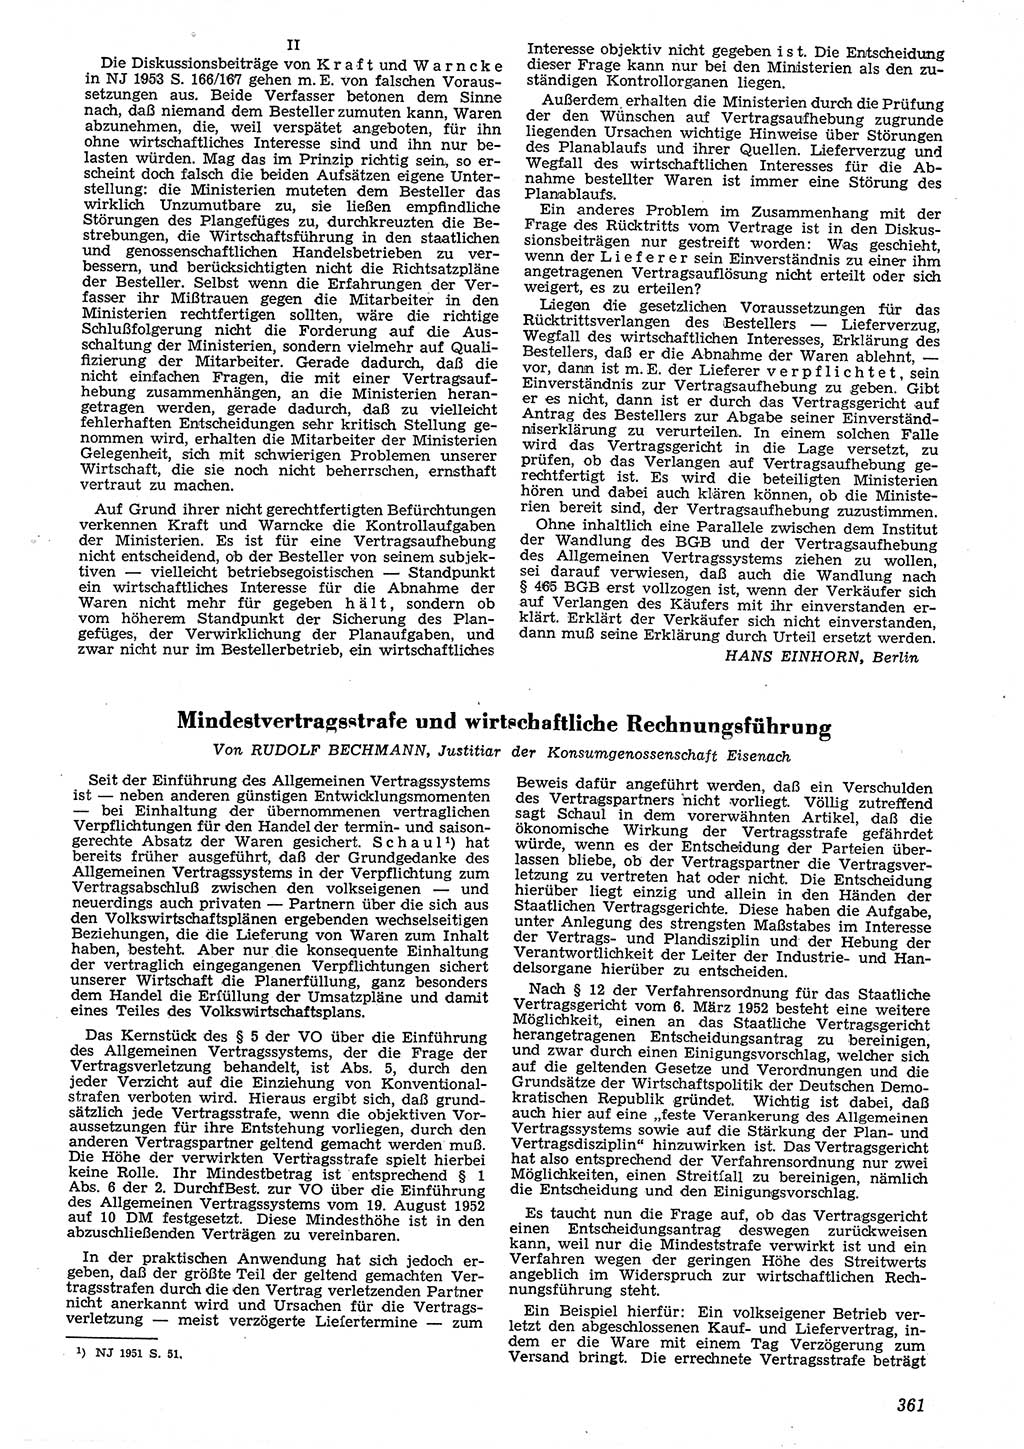 Neue Justiz (NJ), Zeitschrift für Recht und Rechtswissenschaft [Deutsche Demokratische Republik (DDR)], 7. Jahrgang 1953, Seite 361 (NJ DDR 1953, S. 361)